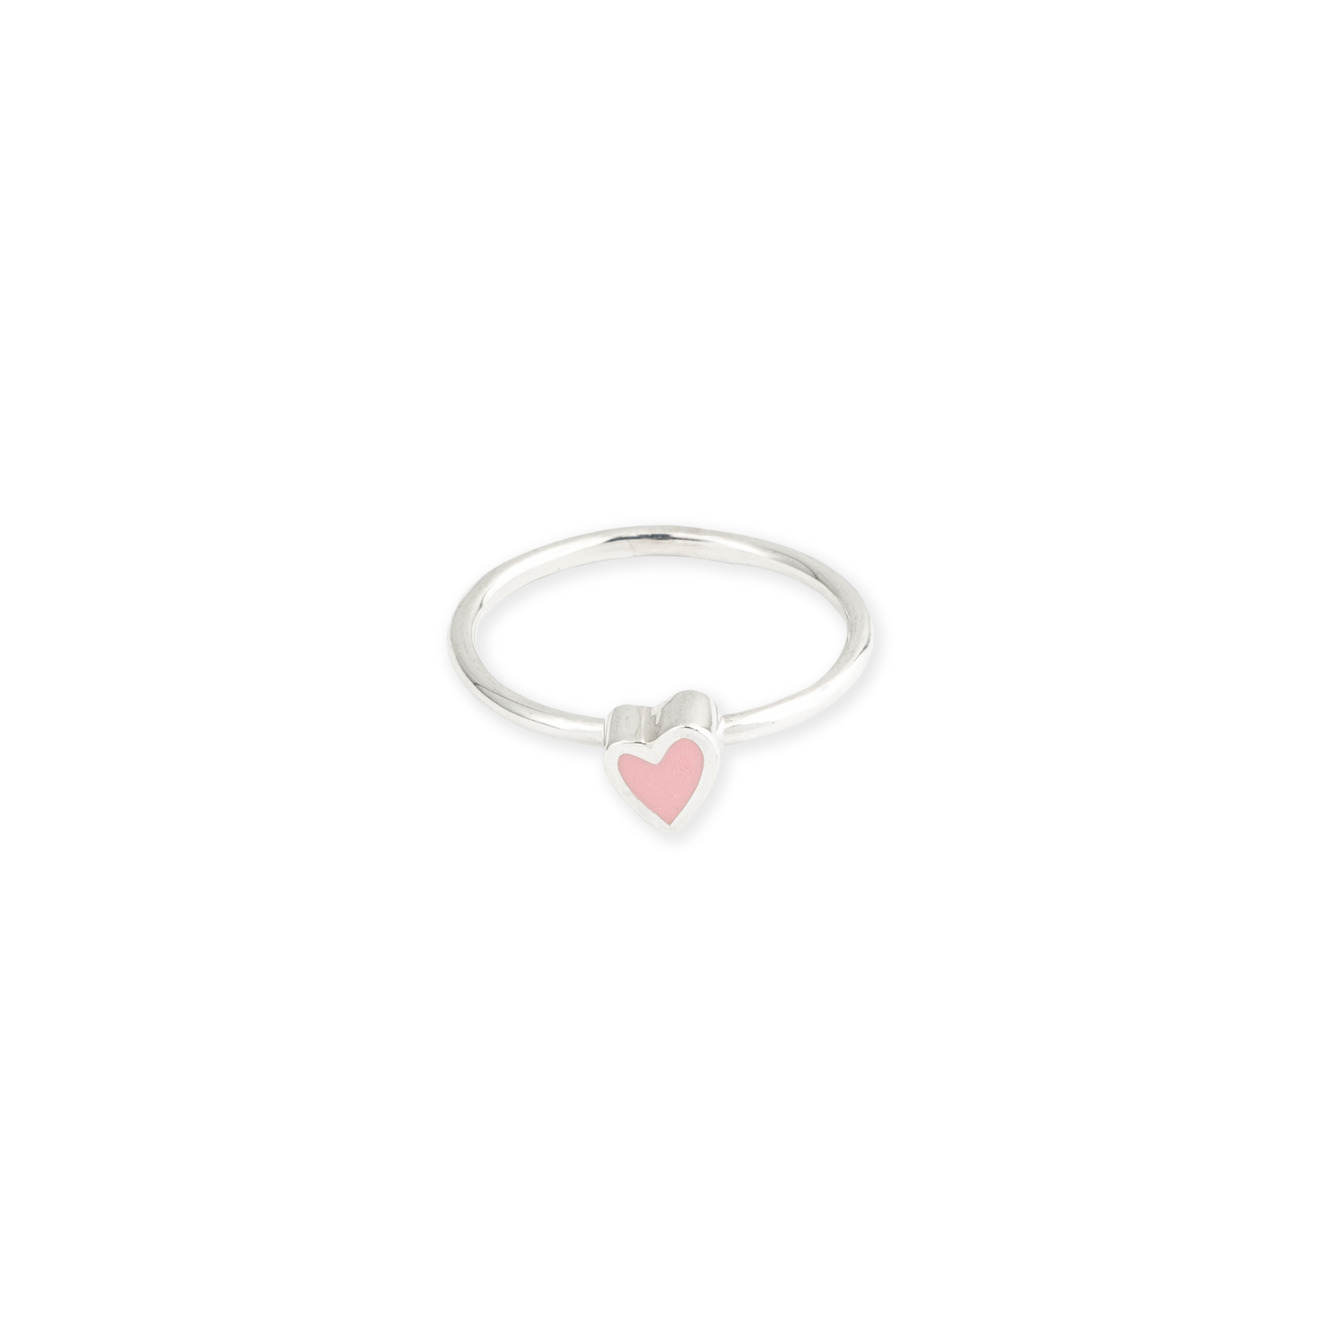 ура jewelry кольцо из серебра с жемчугом УРА jewelry Кольцо из серебра с розовым сердцем эмаль